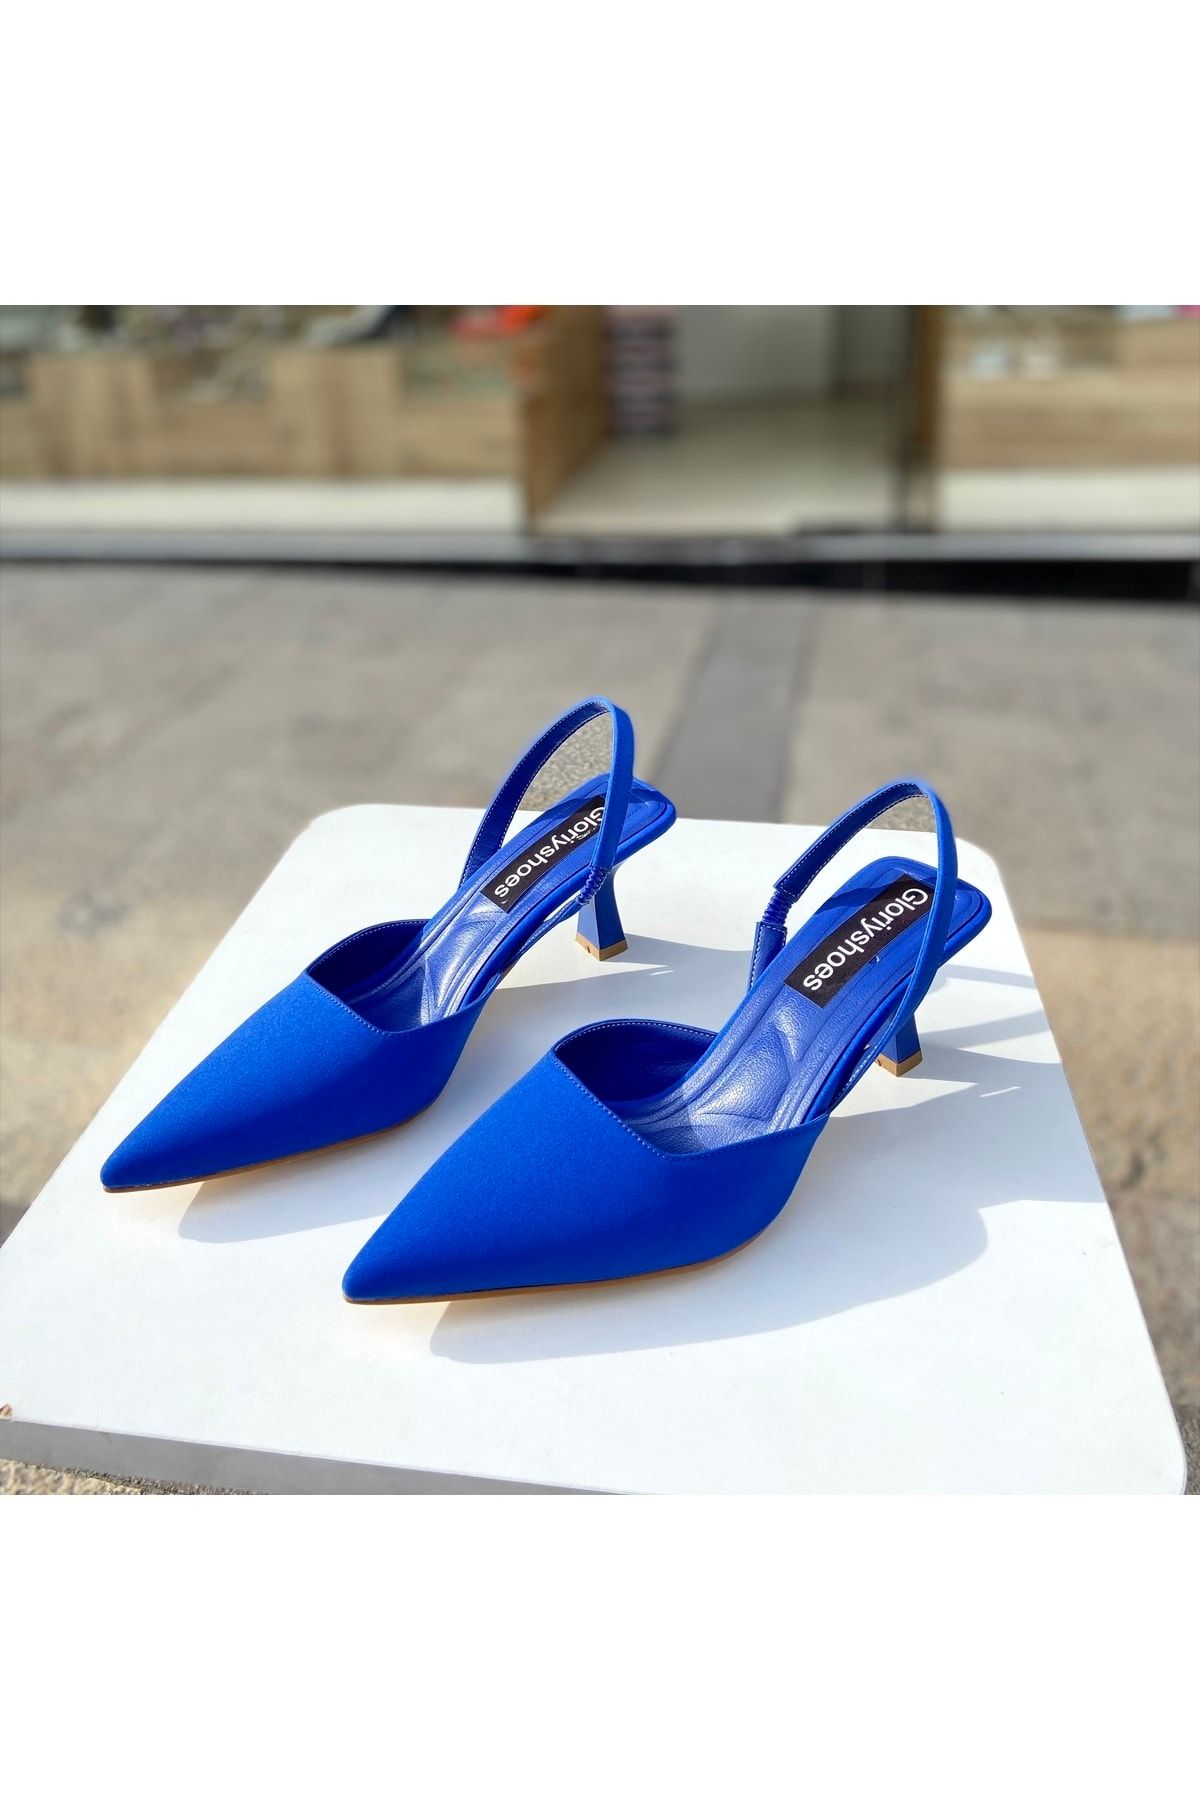 Gloriys Ayakkabı & Çanta Saks Mavisi Saten 5 Cm Topuklu Ayakkabı